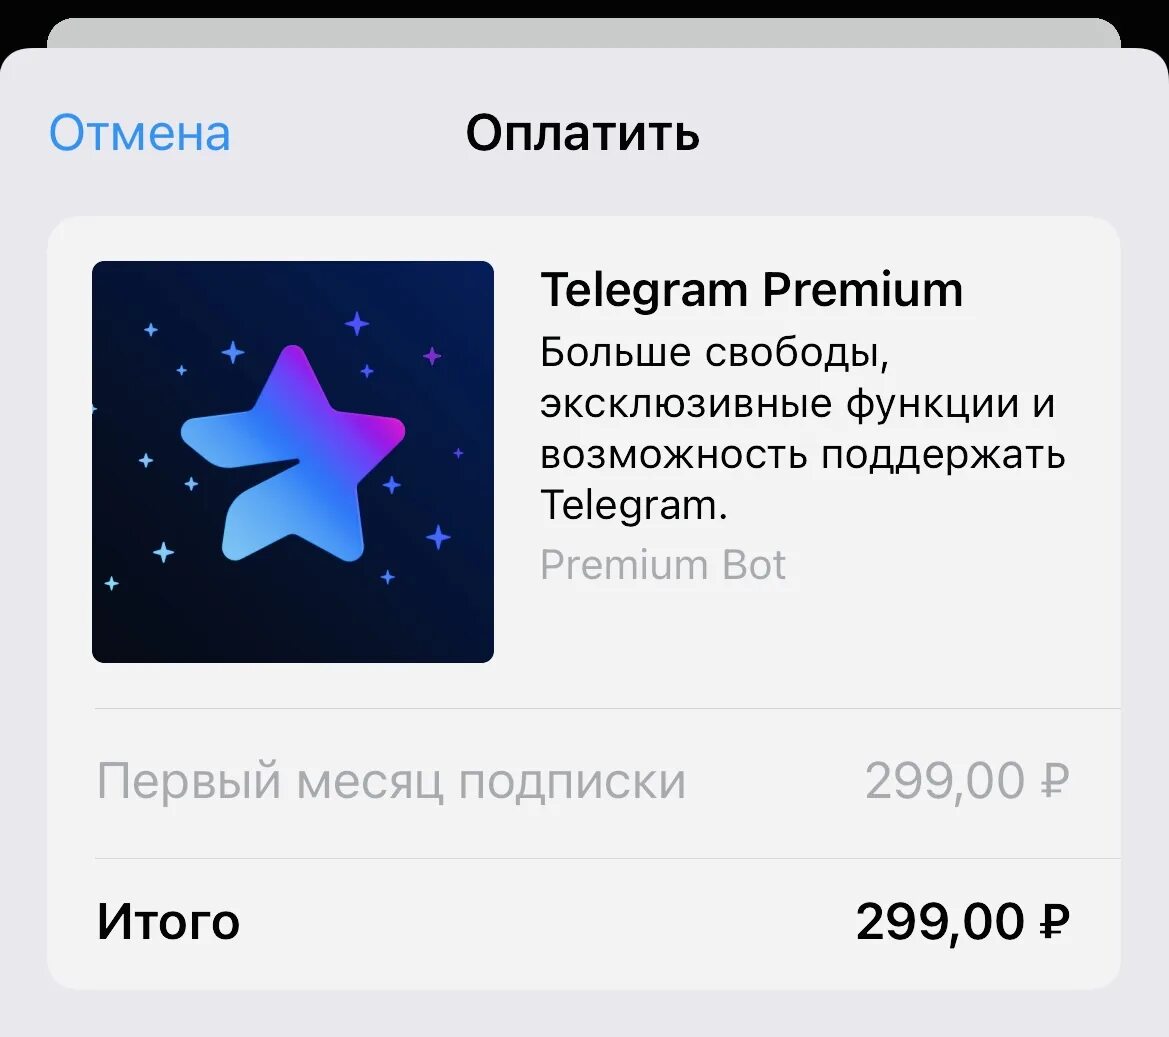 Купить телеграм премиум на месяц. Telegram Premium. Подписка телеграмм премиум. Телеграм премиум логотип. Премиум бот телеграмм.